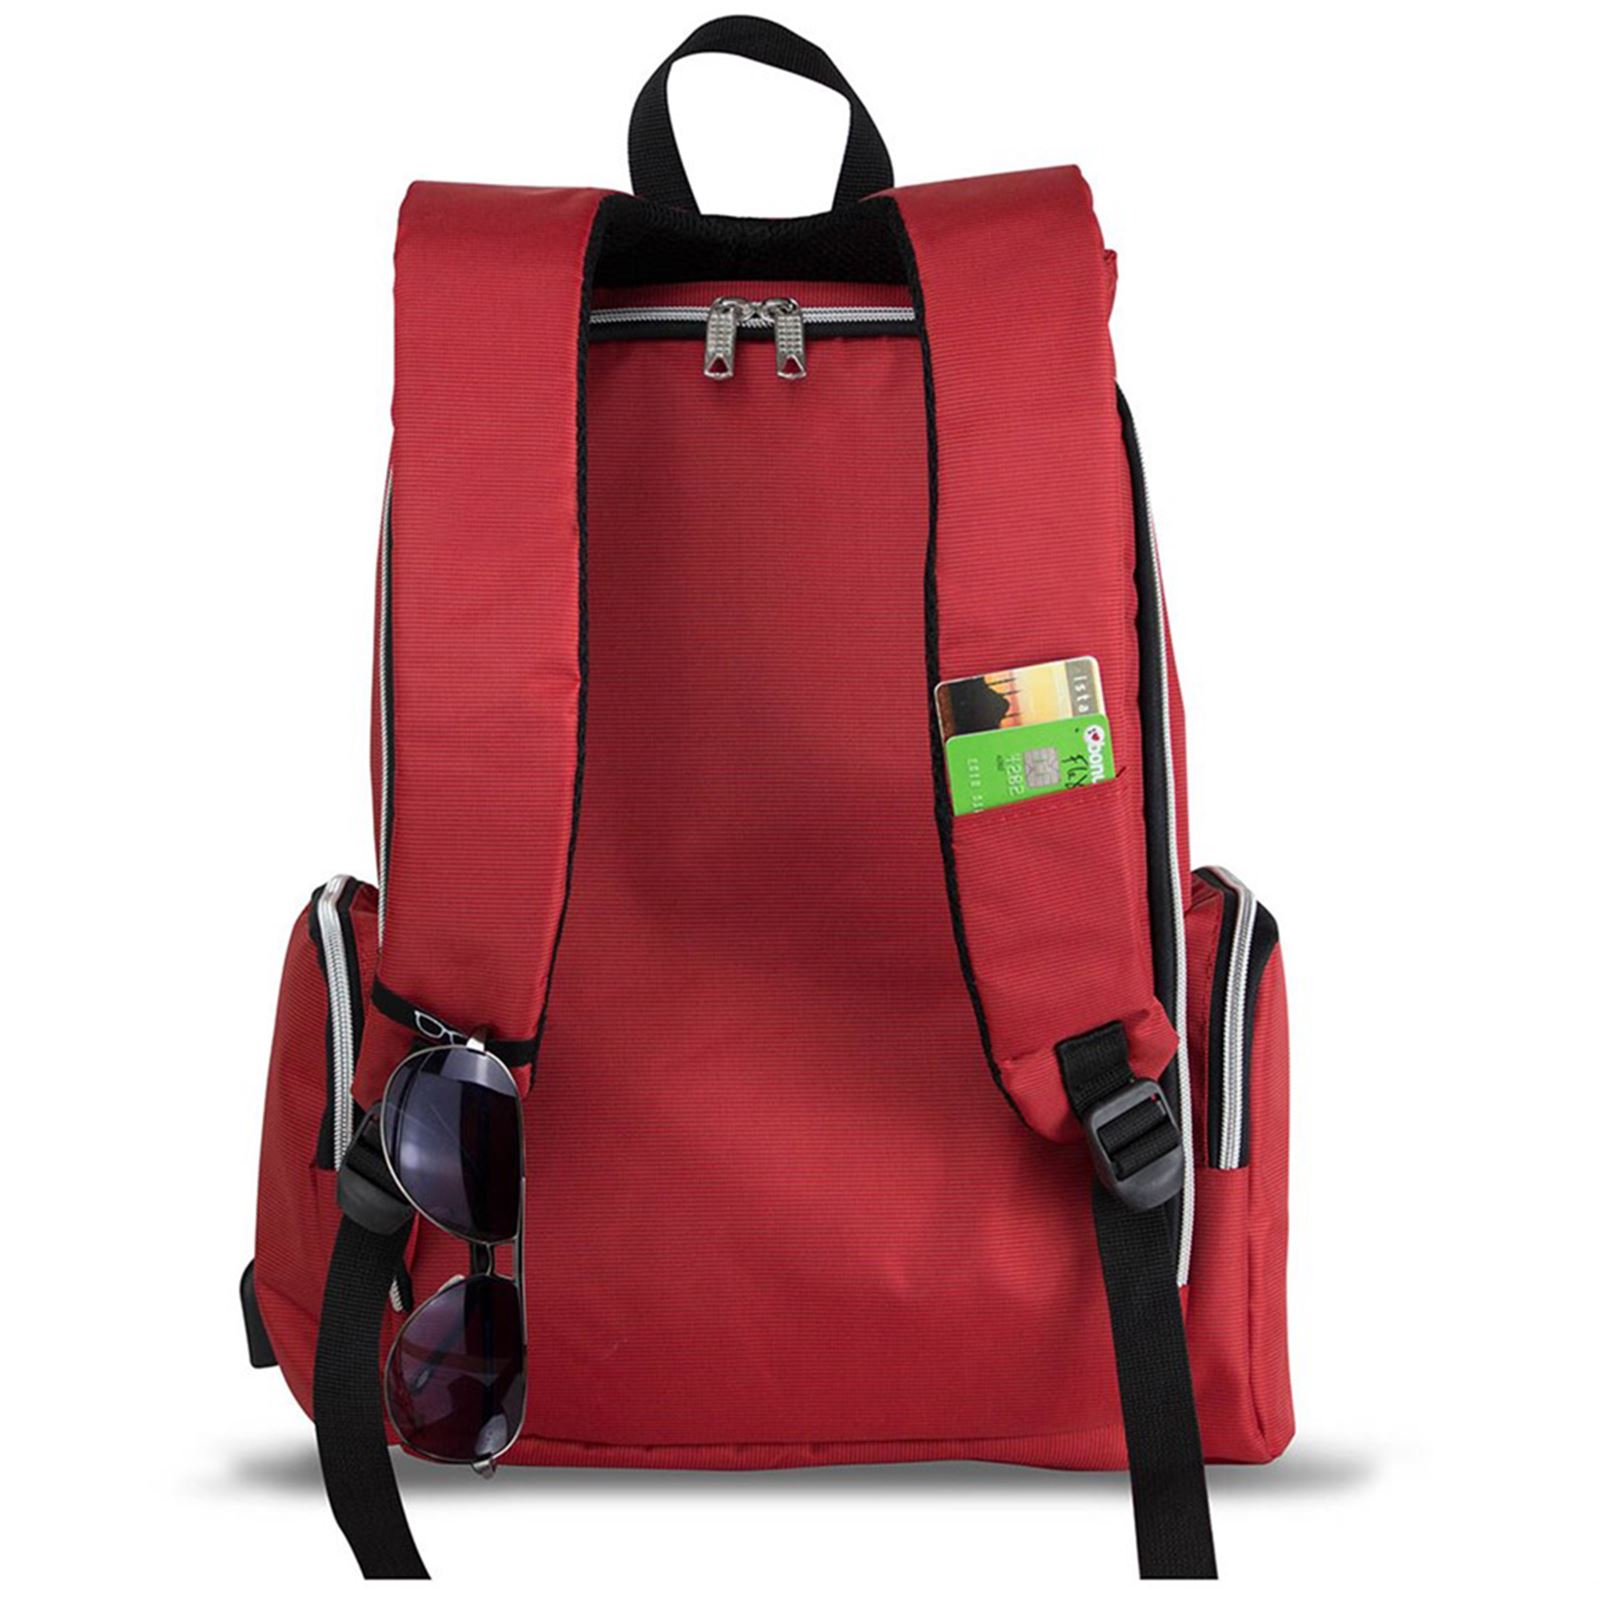 My Valice Smart Bag Mother Star Usb'li Bebek Bakım Çantası Kırmızı